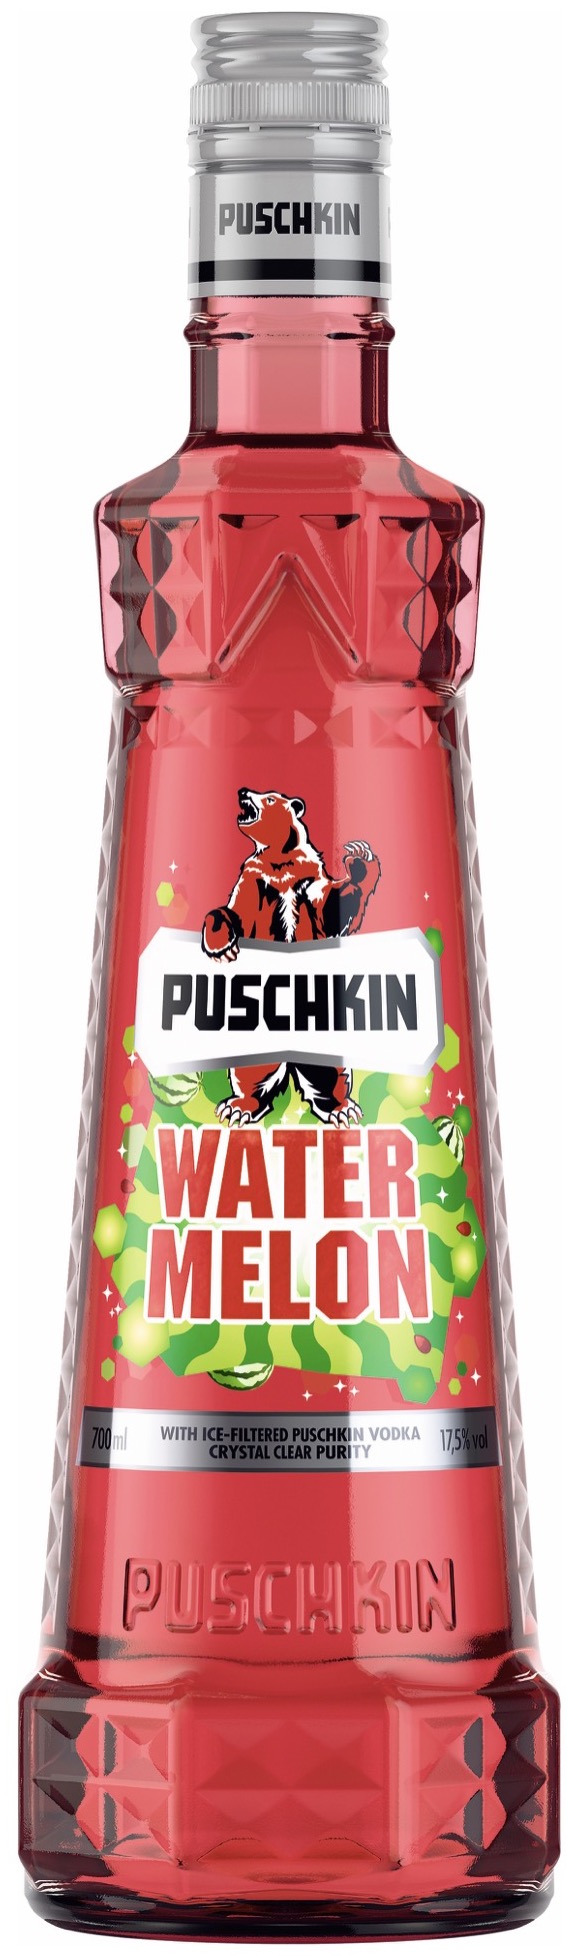 Puschkin Watermelon Vodka 17,5 % vol. 0,7 l